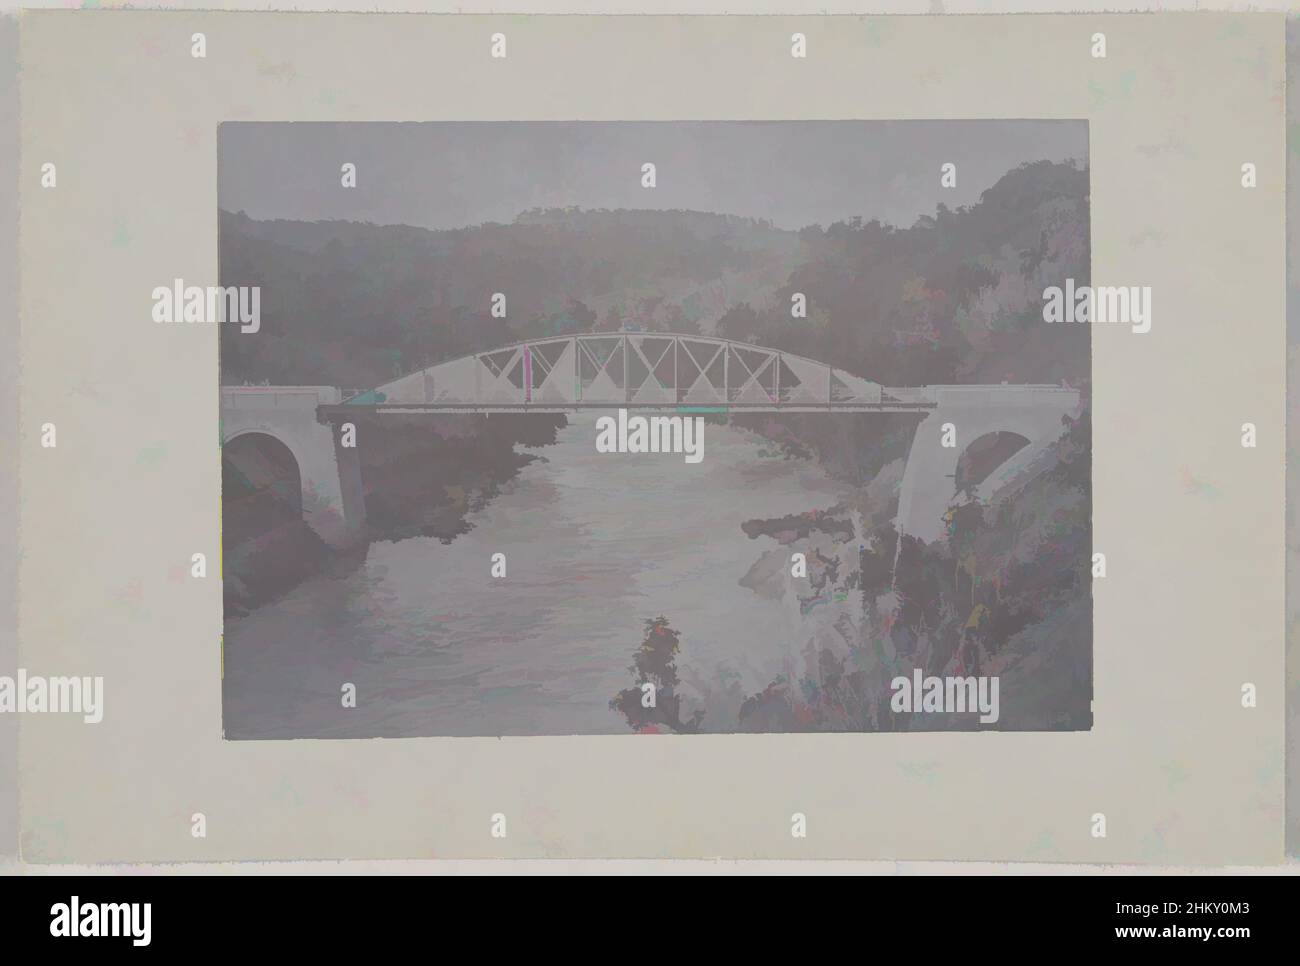 Arte inspirado en el puente sobre un río, en el camino a Wijnkoopsbaai en Java56a en el camino a Wijnkoopsbaai ('Puente 2a en el desfiladero de Anei' ha sido tachado), puente sobre un río, en el camino a Wijnkoopsbaai, Java, Indias Orientales Holandesas, Java, c.. 1895 - c. 1915, soporte fotográfico, papel, obras clásicas modernizadas por Artotop con un toque de modernidad. Formas, color y valor, atractivo impacto visual en el arte Emociones a través de la libertad de las obras de arte de una manera contemporánea. Un mensaje atemporal que busca una nueva dirección totalmente creativa. Artistas que se están volviendo al medio digital y creando el Artotop NFT Foto de stock